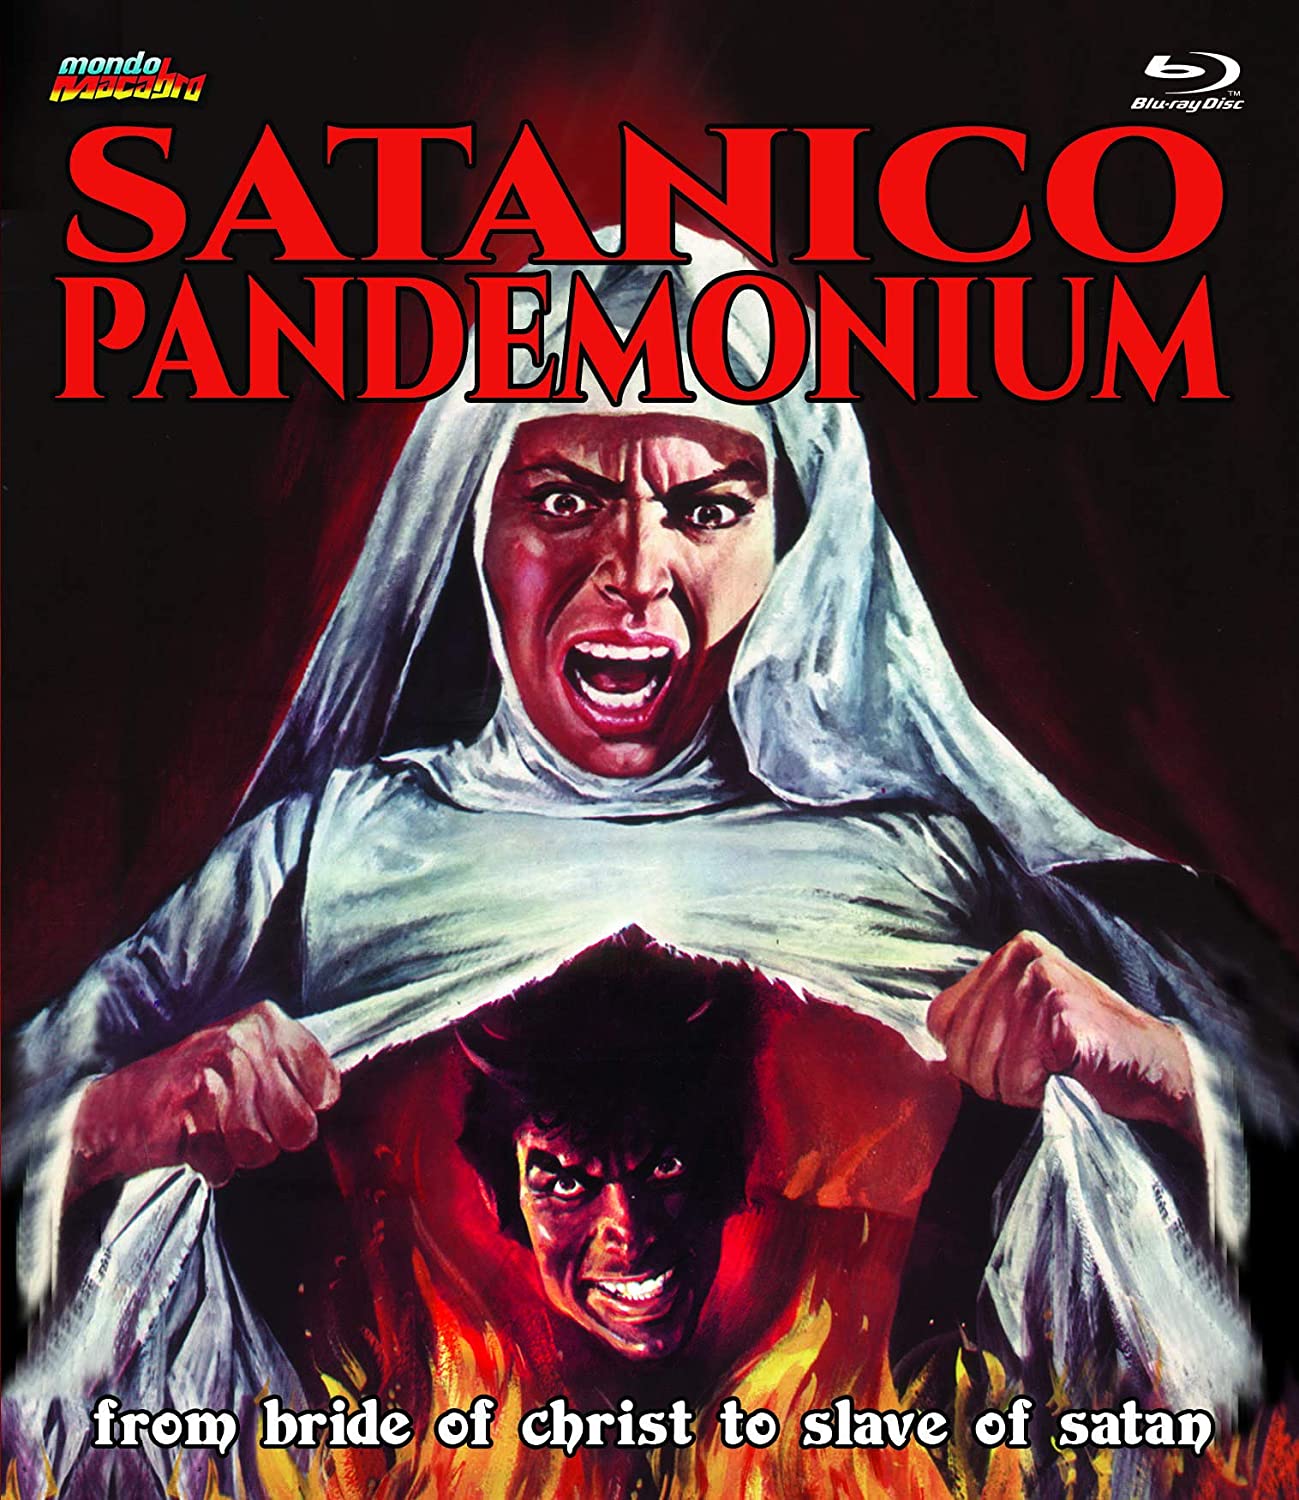 satanico pandemonium movie